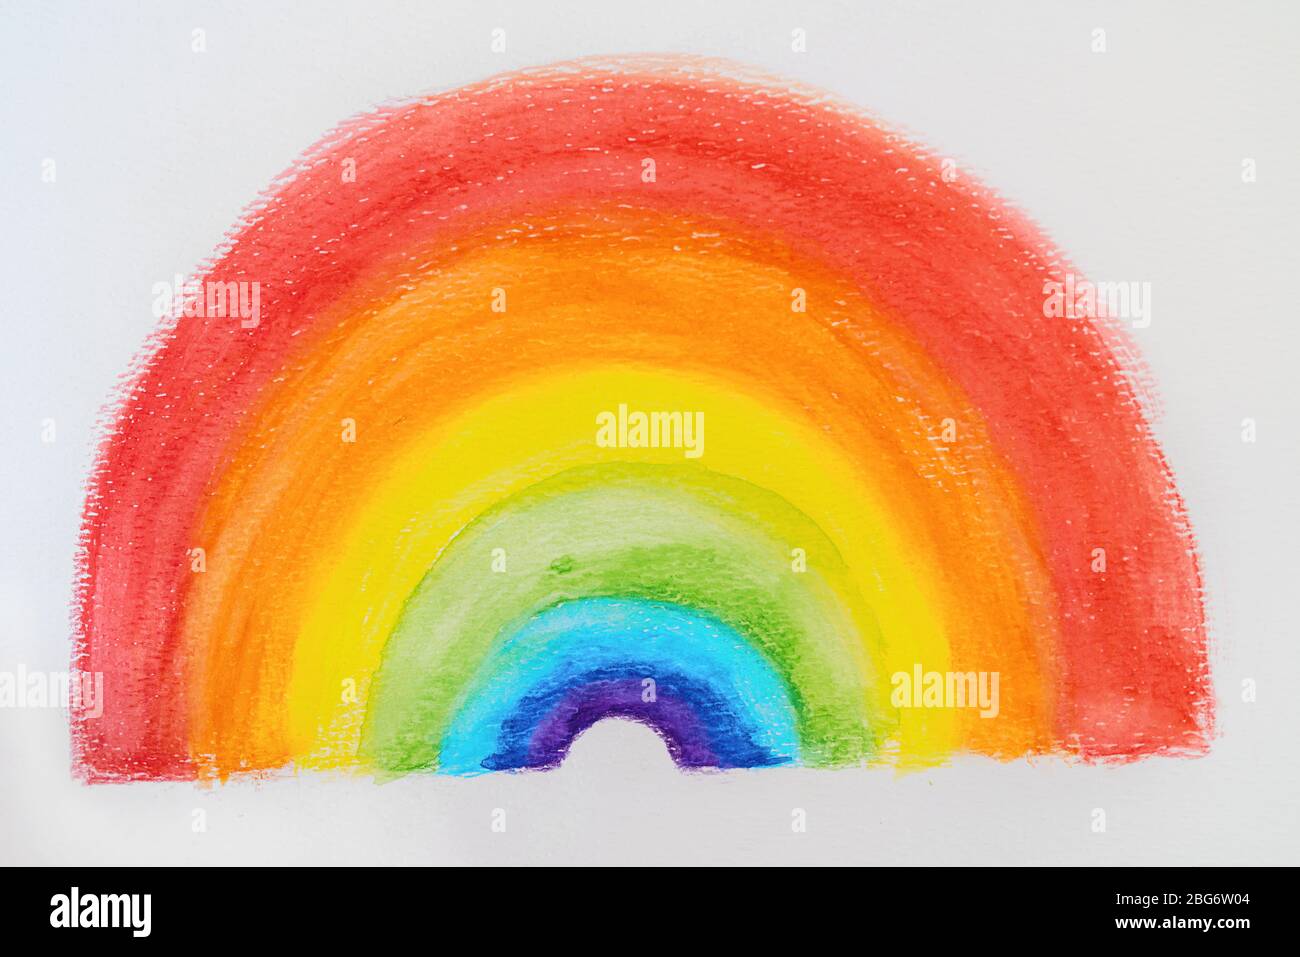 Regenbogen Malerei Kinder Zeichnung in Gouache bunten Aquarell für  Positivität während COVID-19 Pandemie Stockfotografie - Alamy